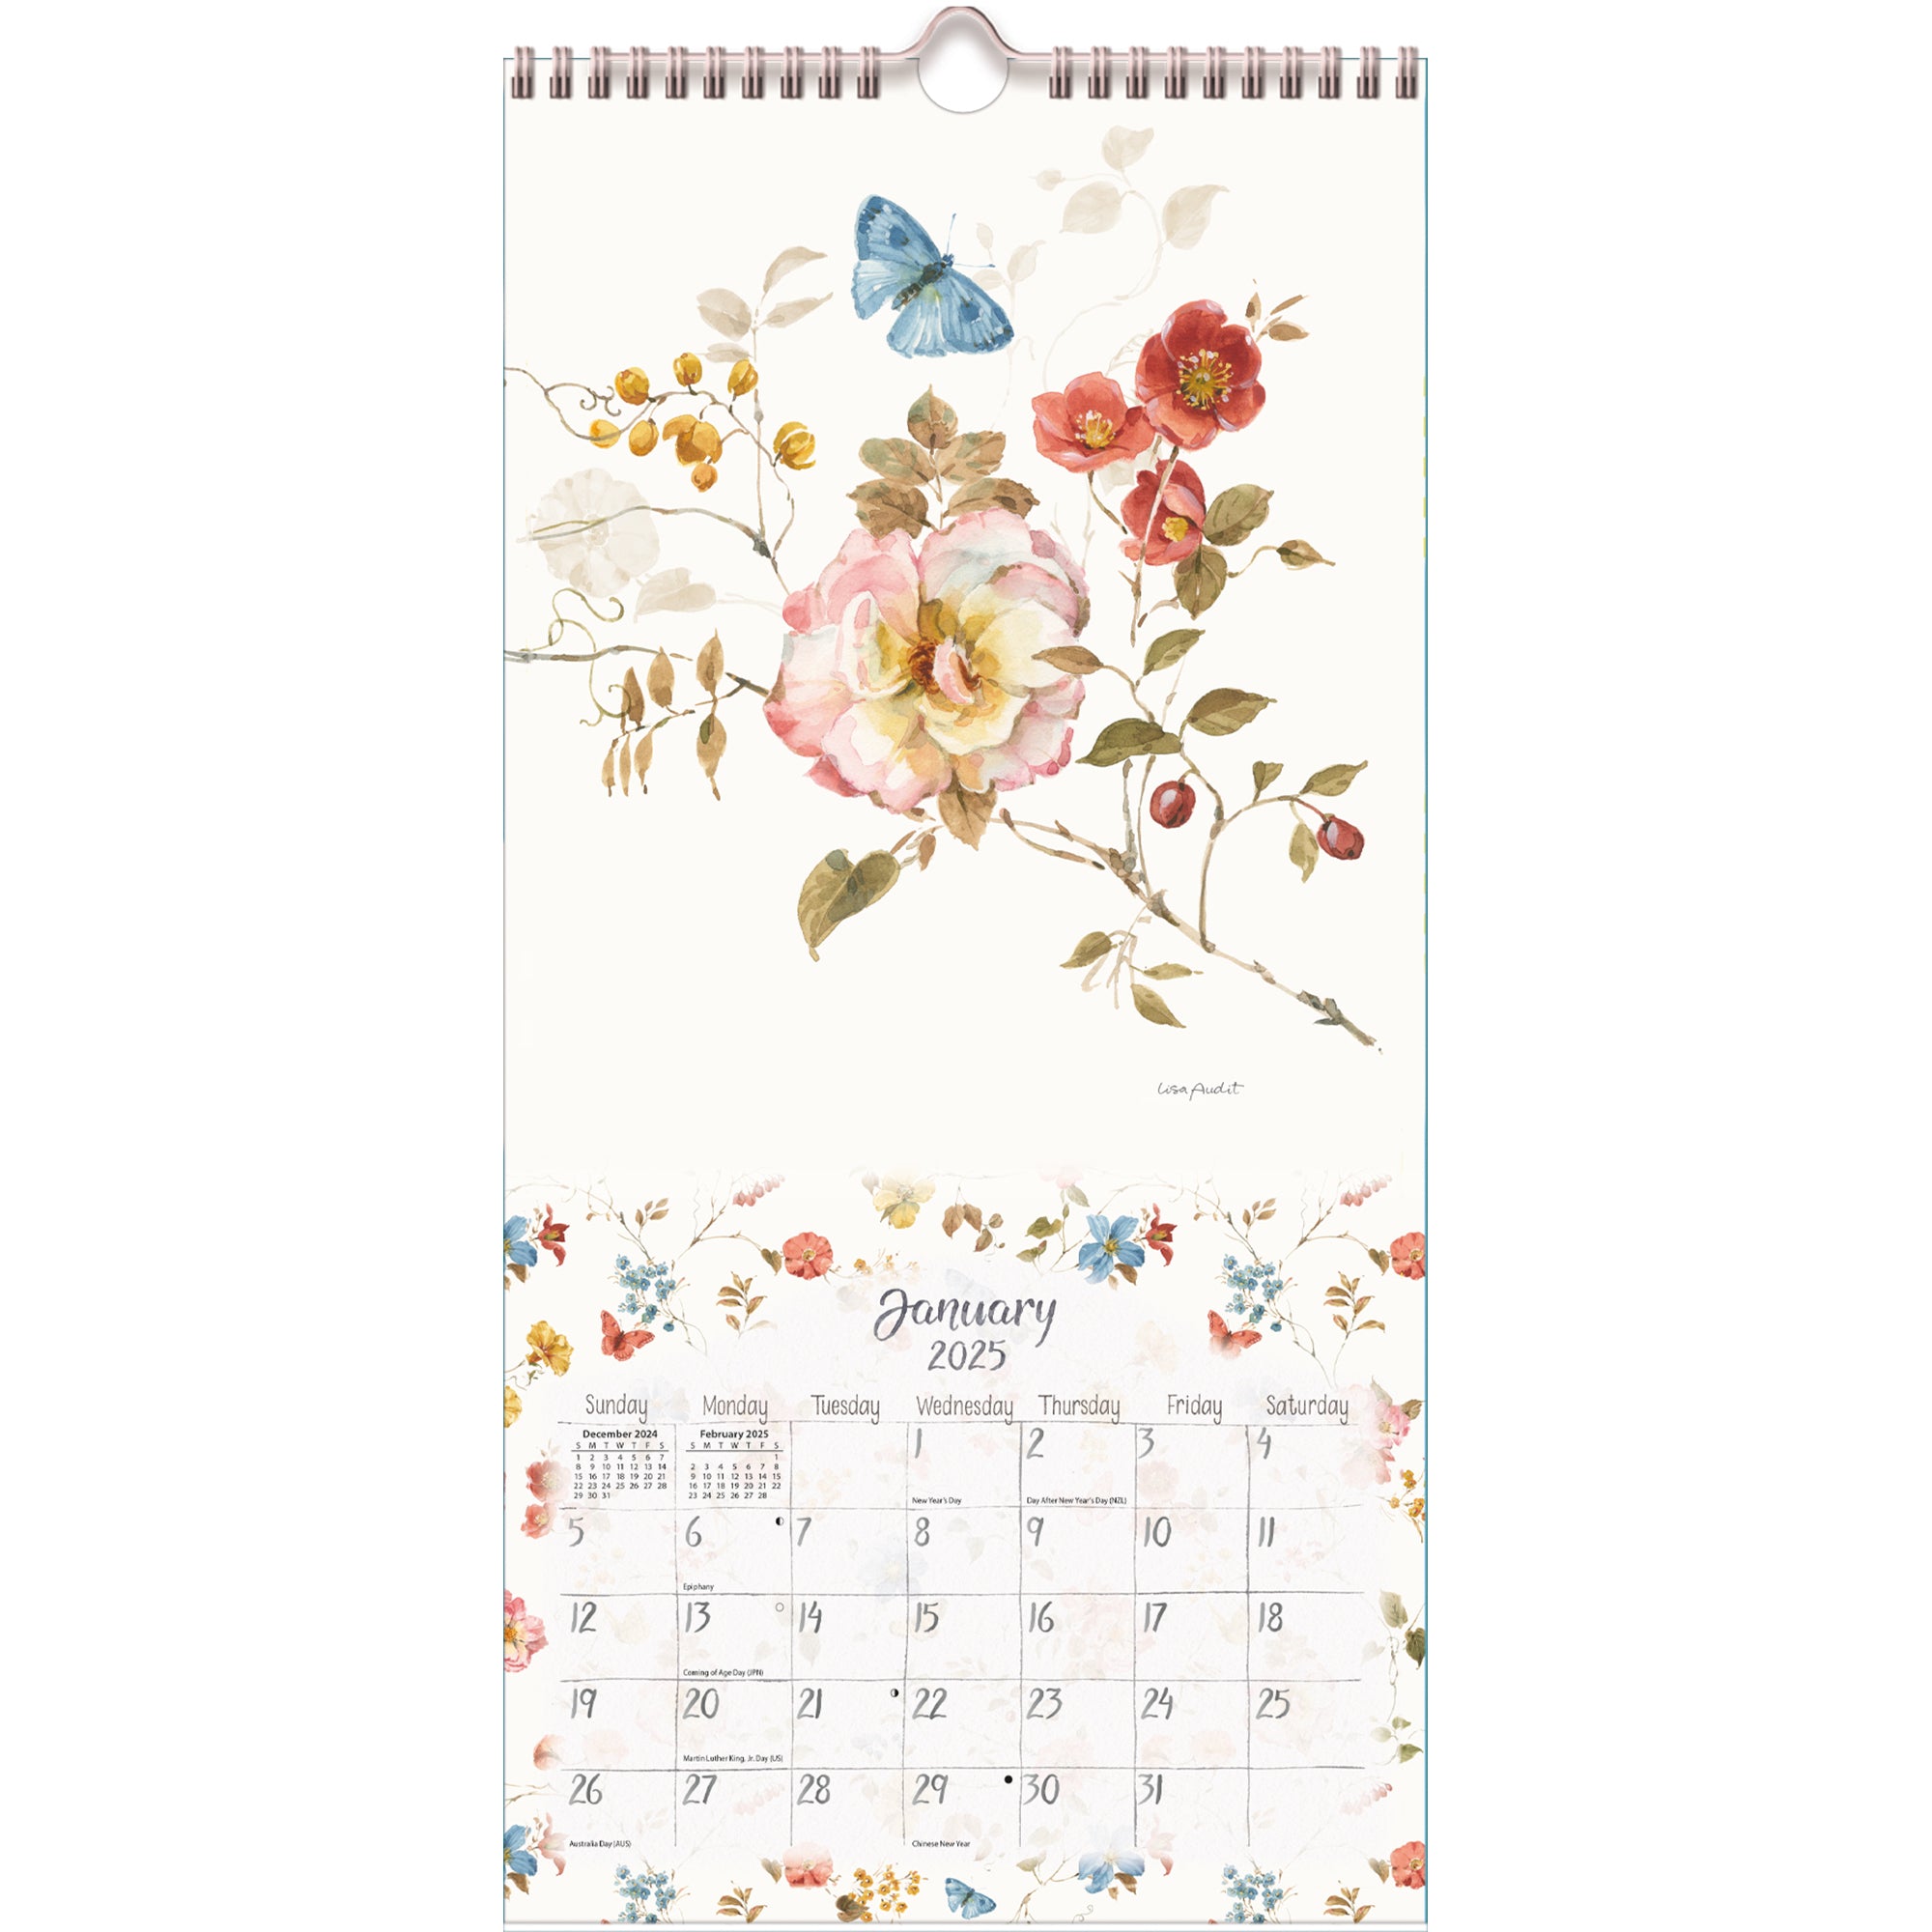 2025 Watercolor Seasons - LANG Slim Wall Calendar